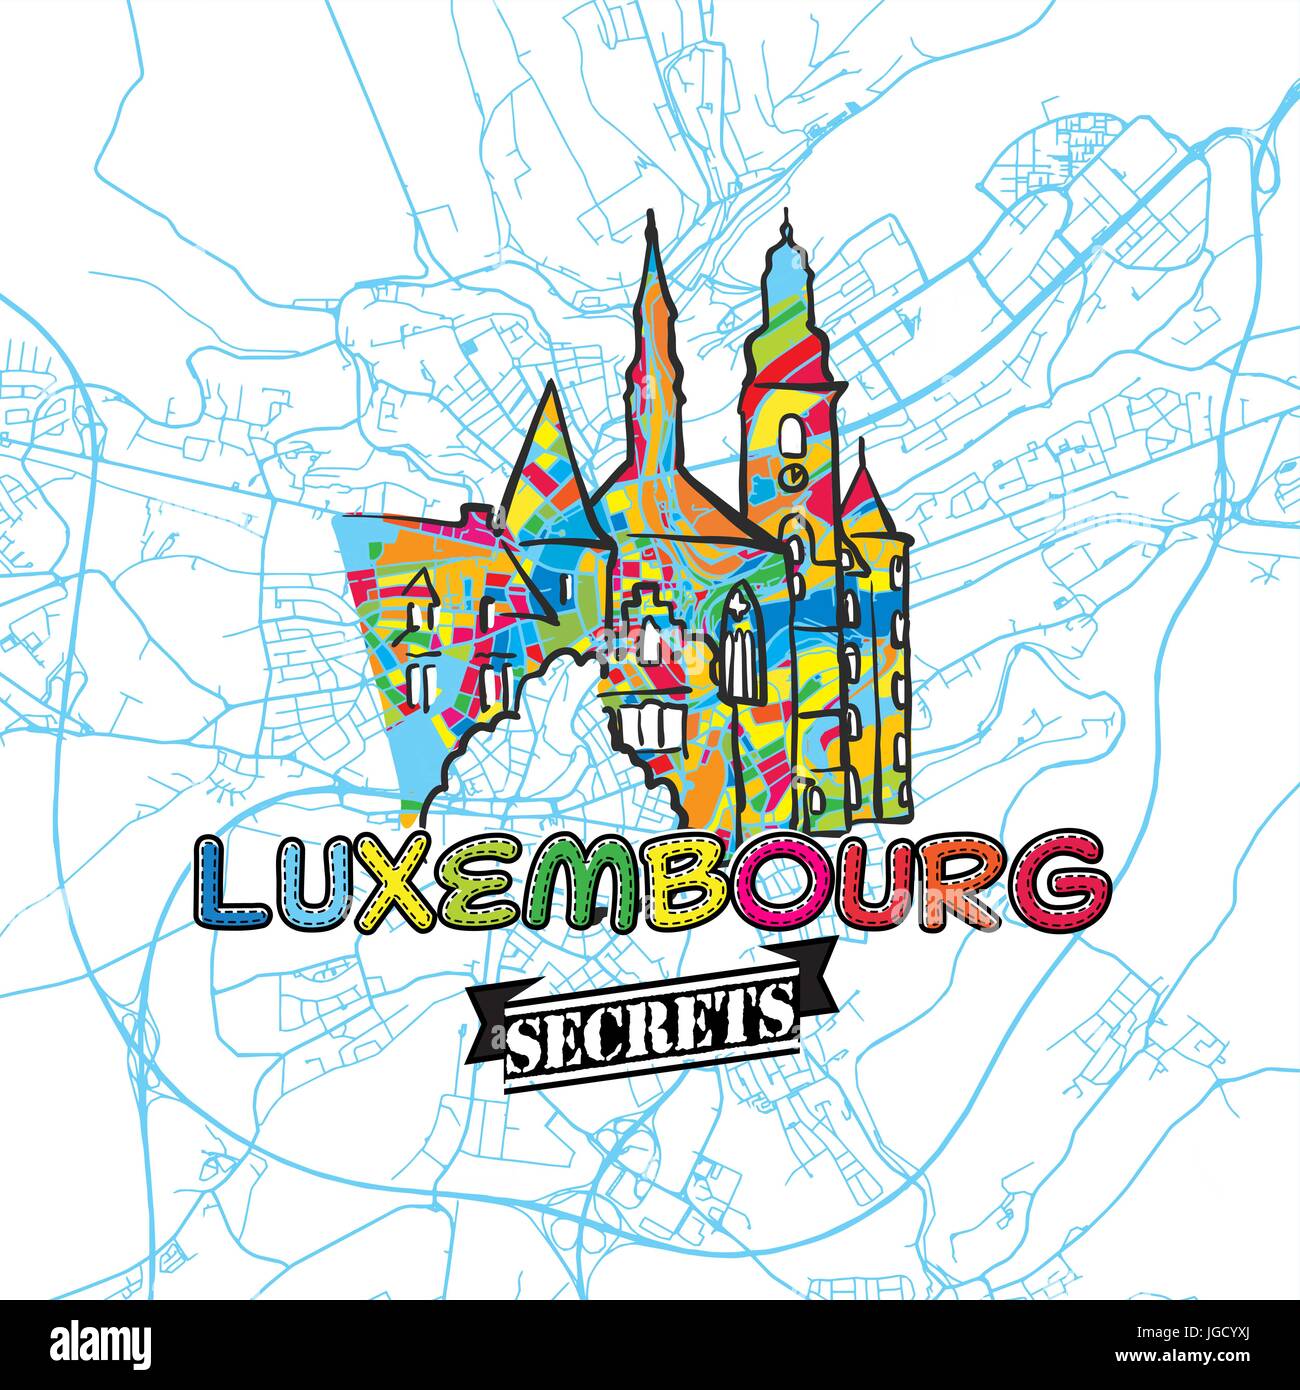 Voyage Luxembourg Art Secrets Site pour la cartographie des experts et des guides de voyage. Le logo de la ville à la main, typo de badge et dessinés à la main sur le dessus de l'image vectorielle sont regroupés Illustration de Vecteur